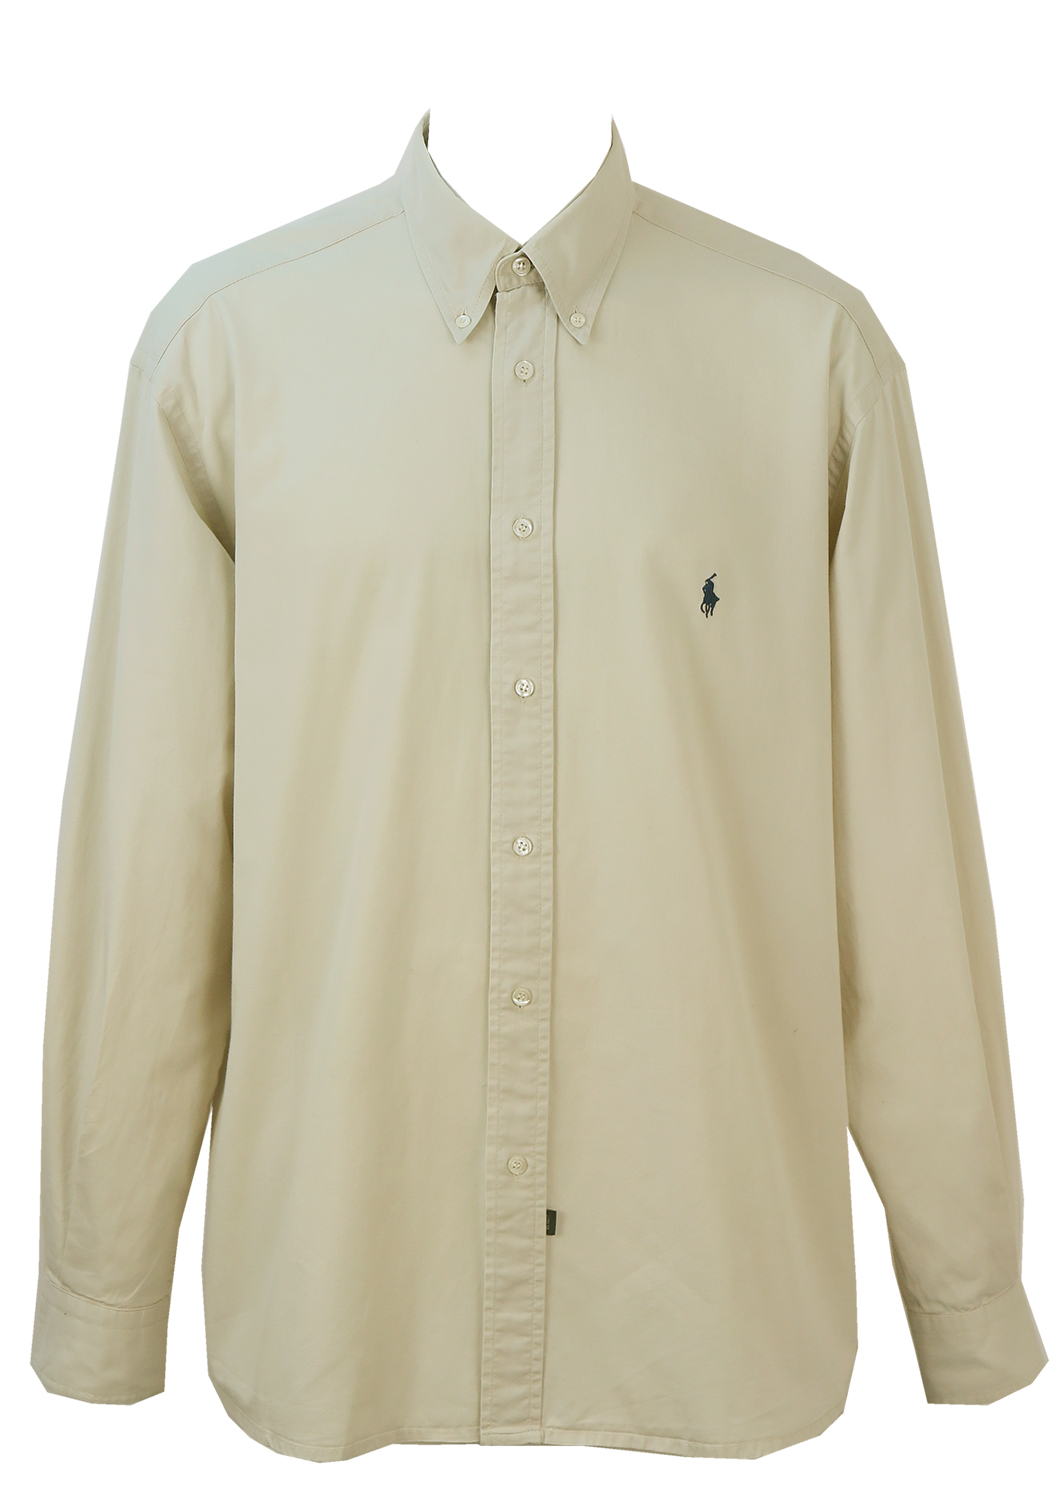 Ralph Lauren Light Grey Cotton Shirt - XXL/XXXL | Reign Vintage